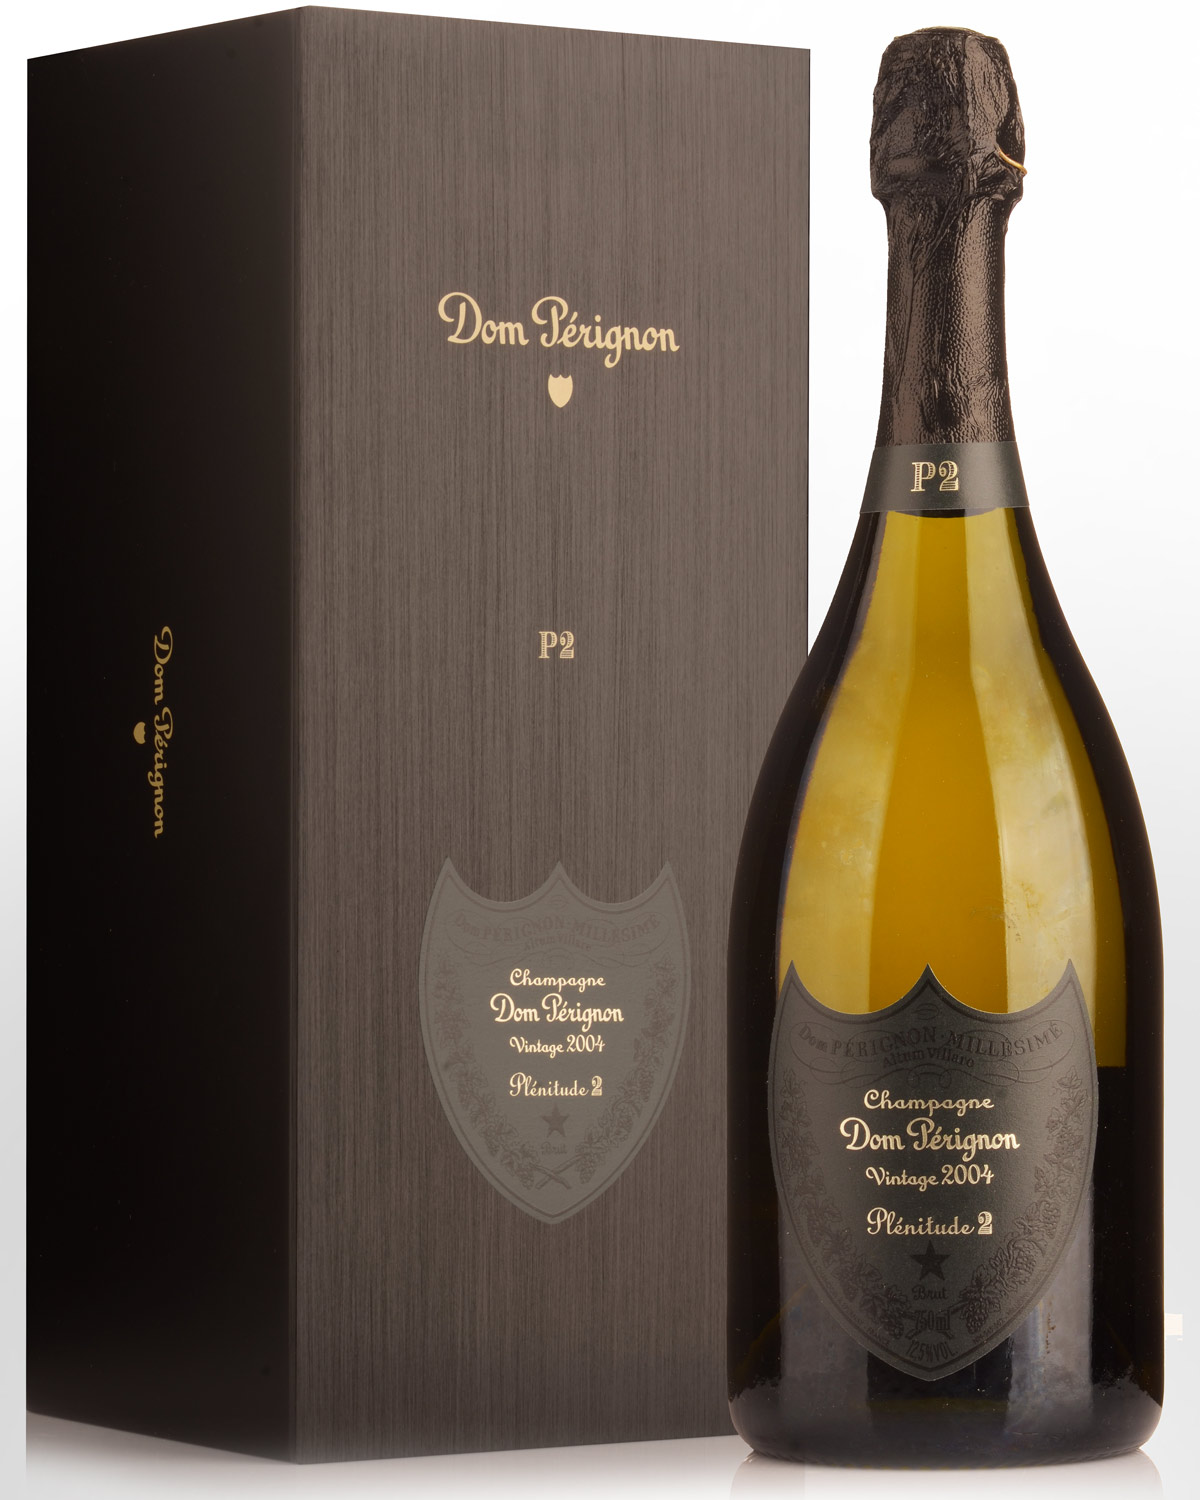 2004 Dom Perignon P2 Champagne | Nicks Wine Merchants